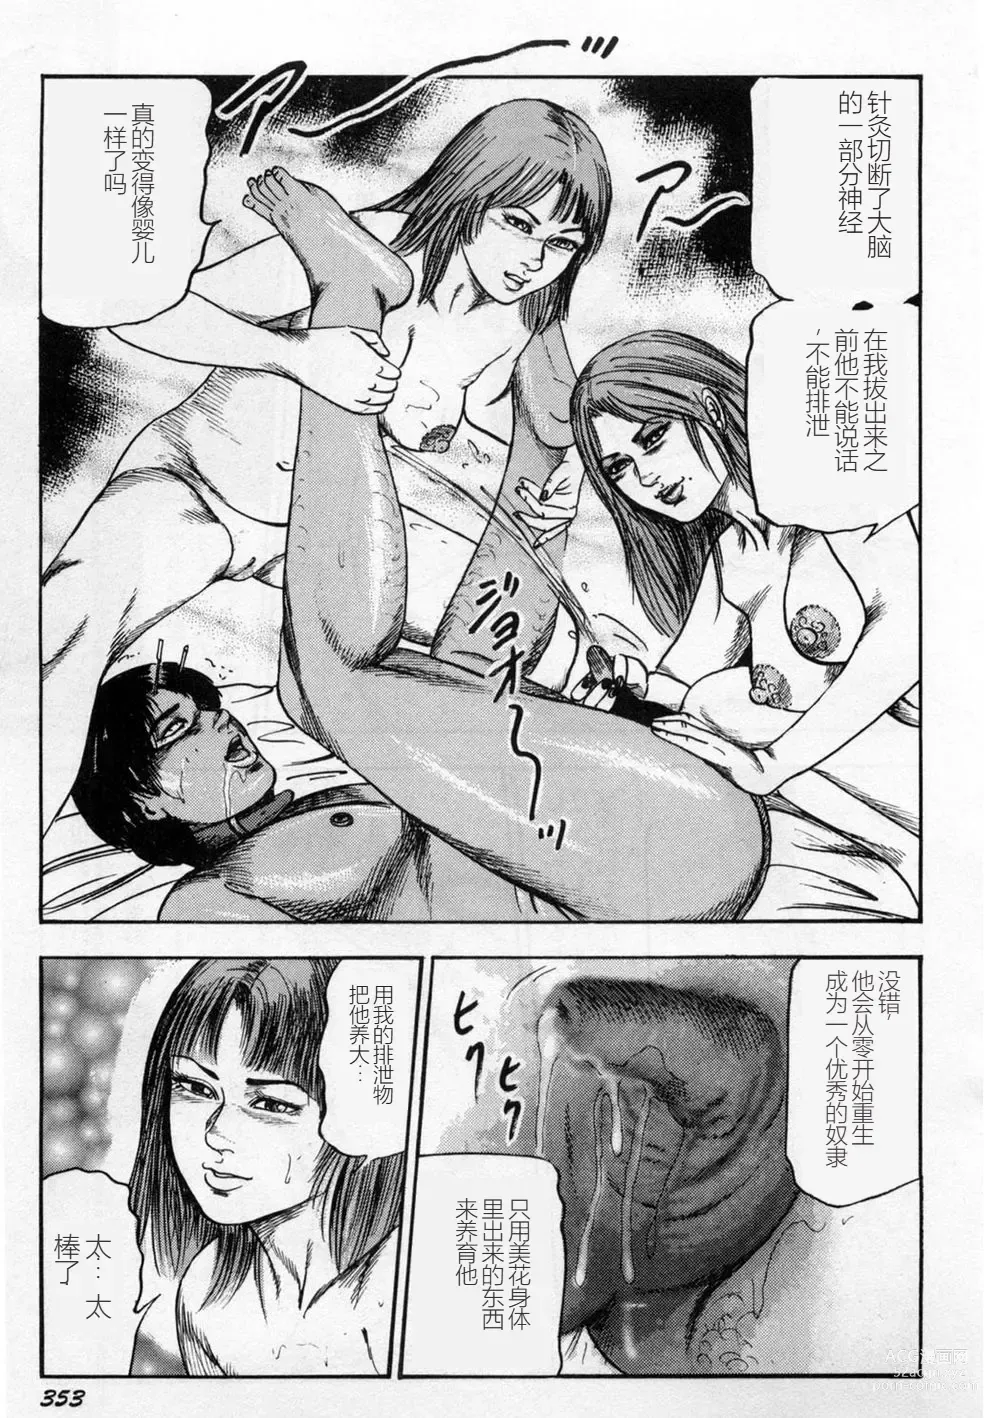 Page 354 of manga Injuu Shimai